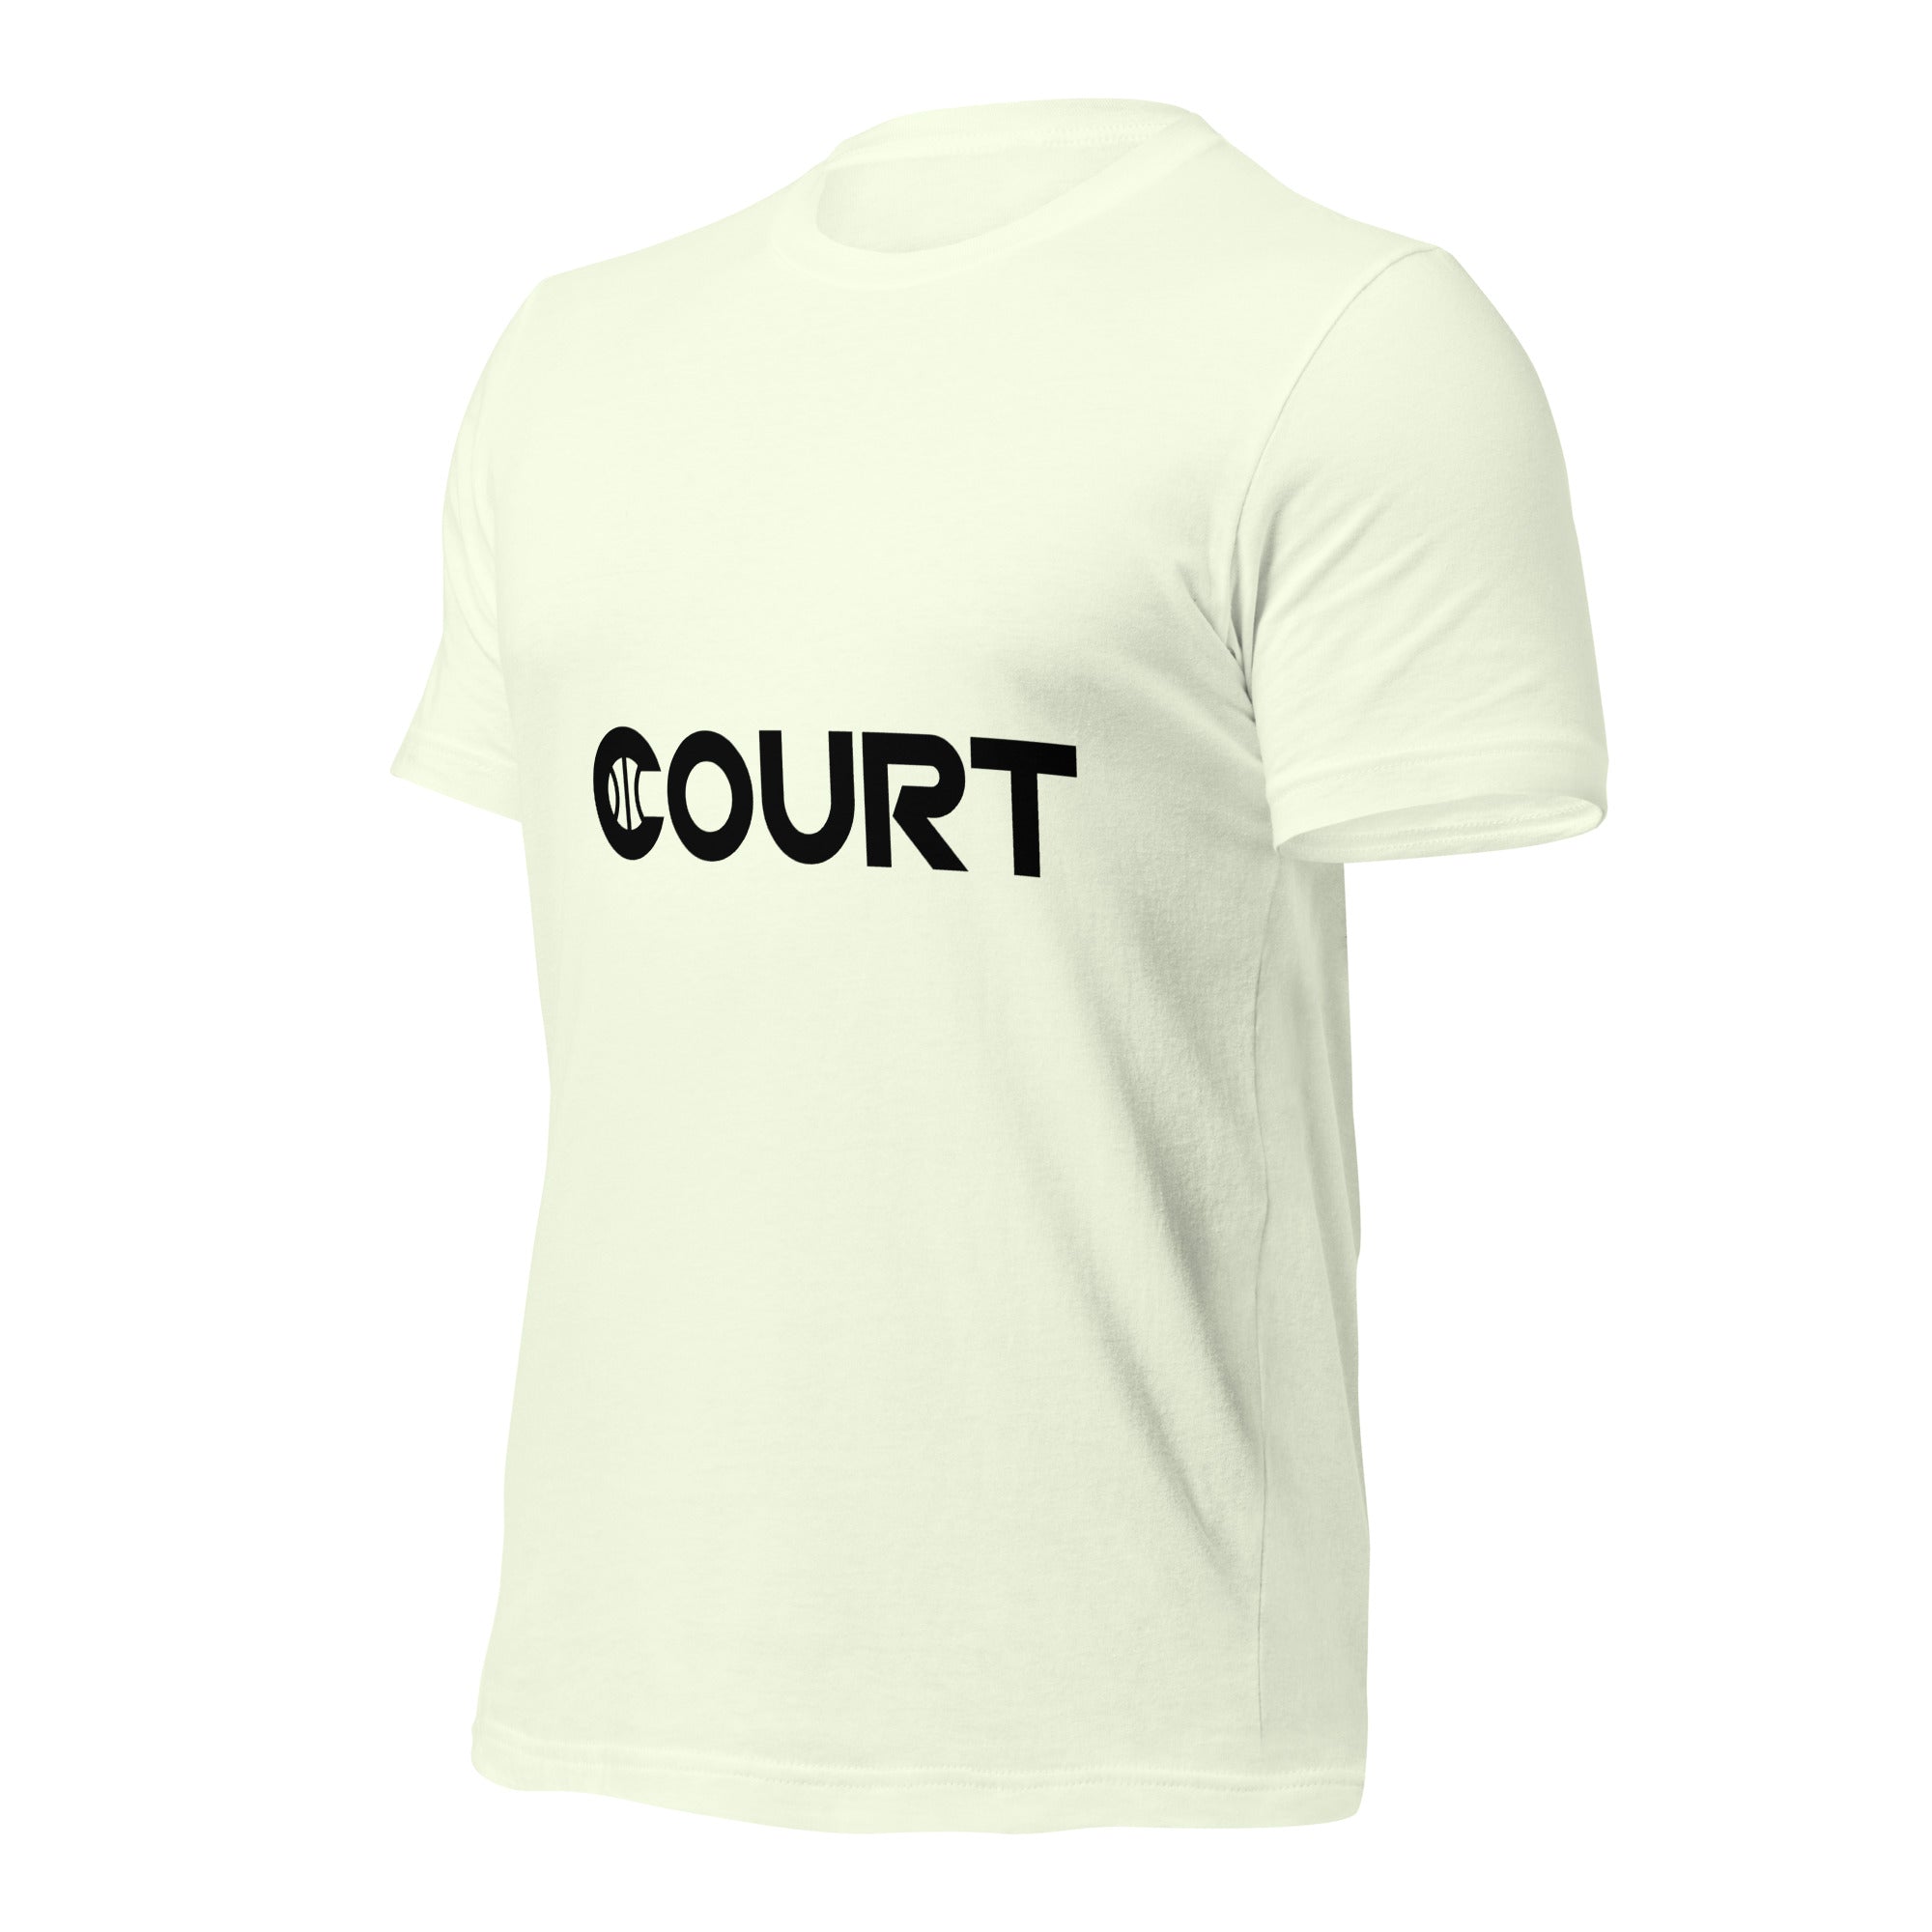 Court Black signature - unisex